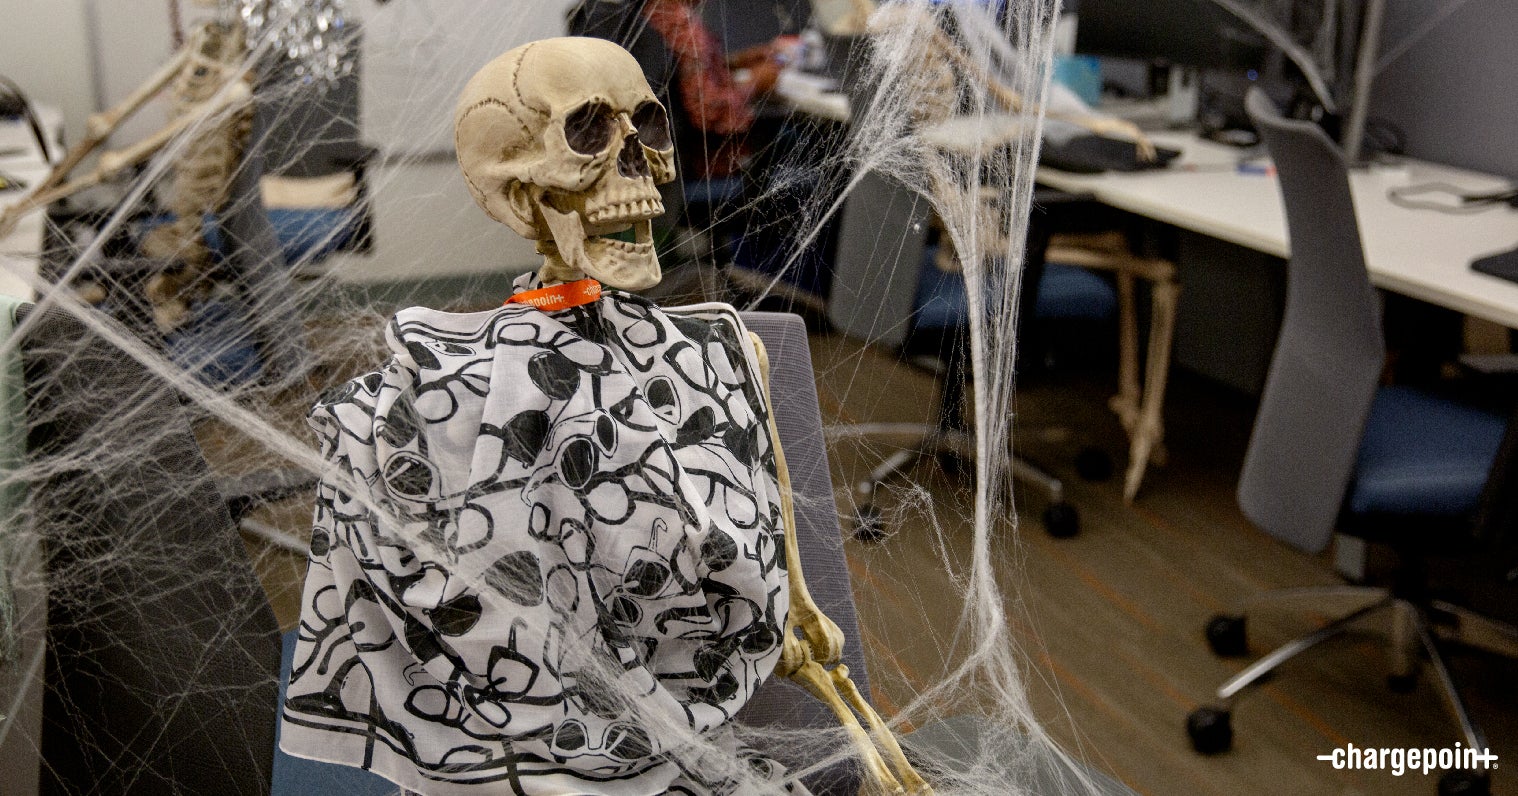 Skeleton working away at his desk